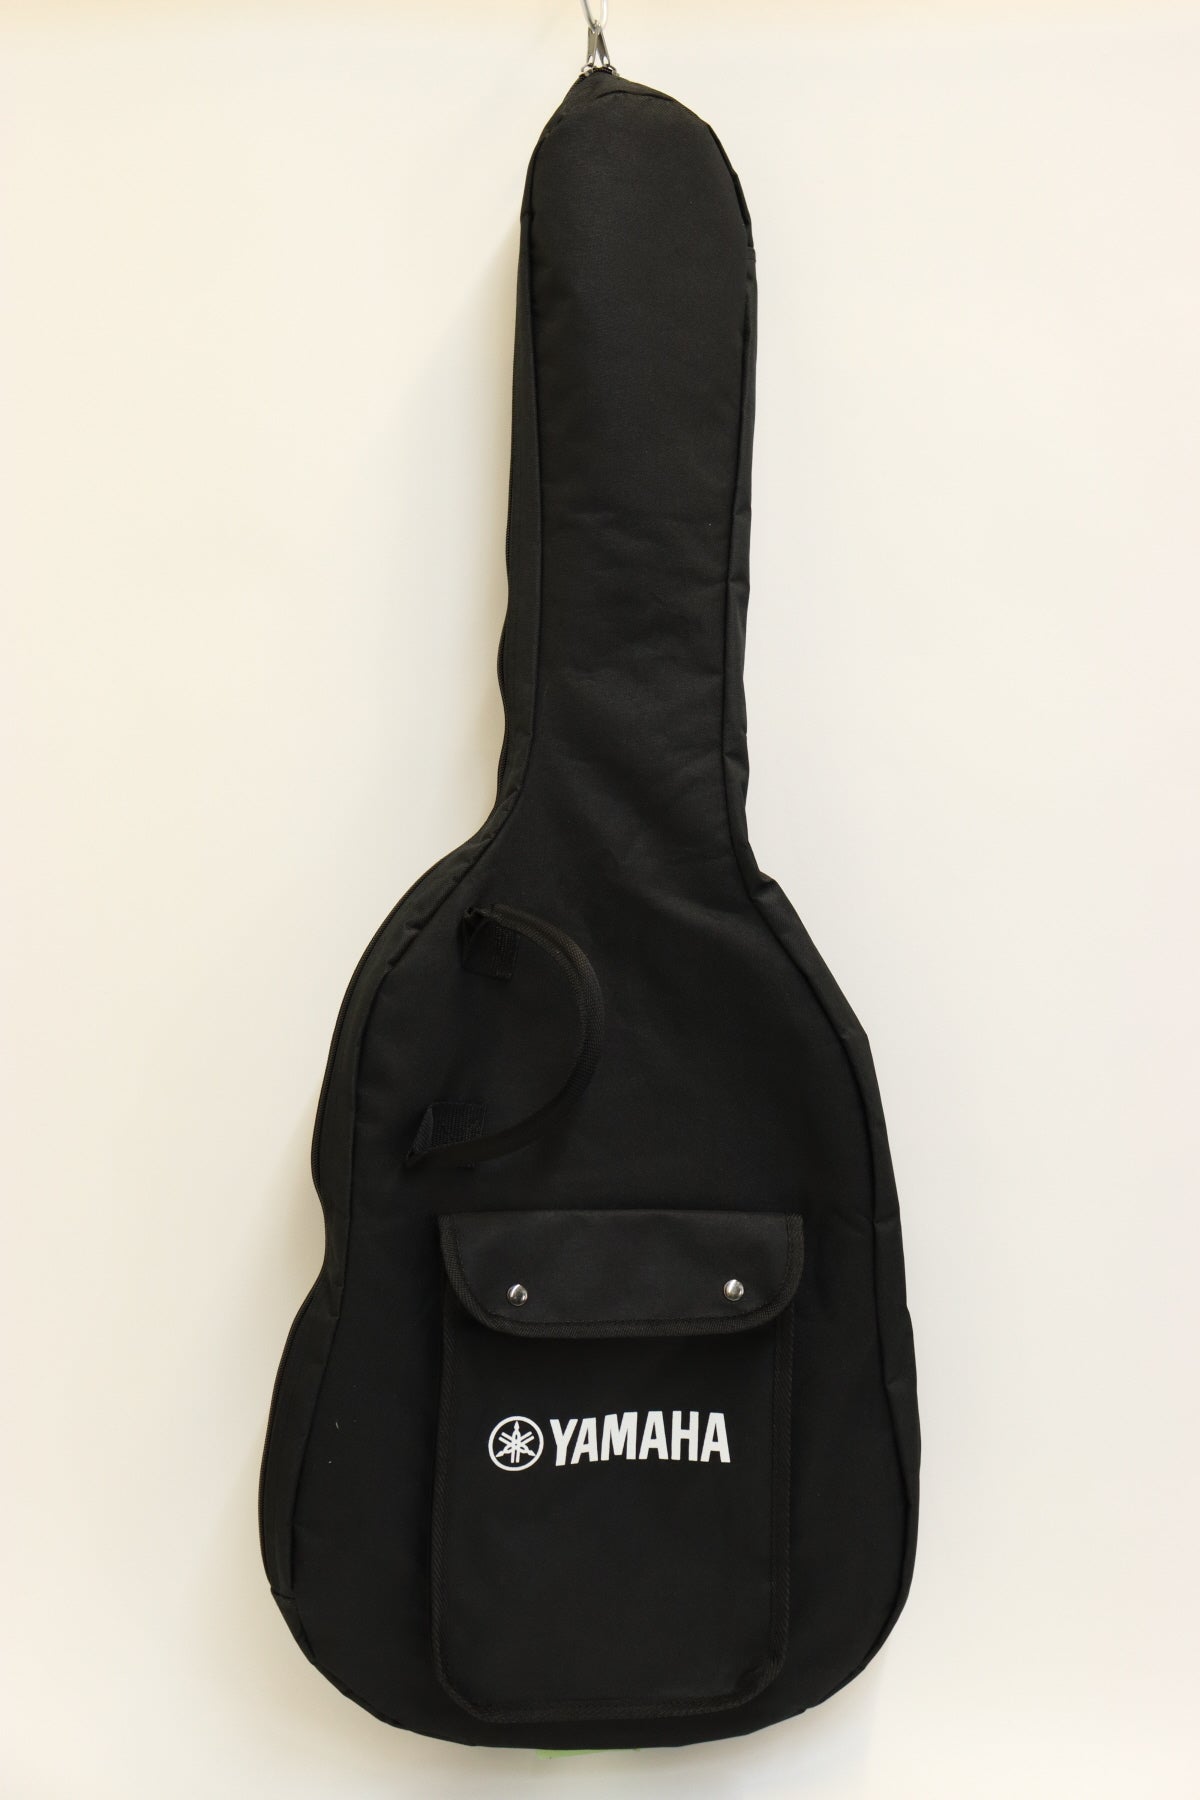 [SN IQZ303004] USED YAMAHA Yamaha / Pacifica PAC612VIIFM Indigo Blue [20]